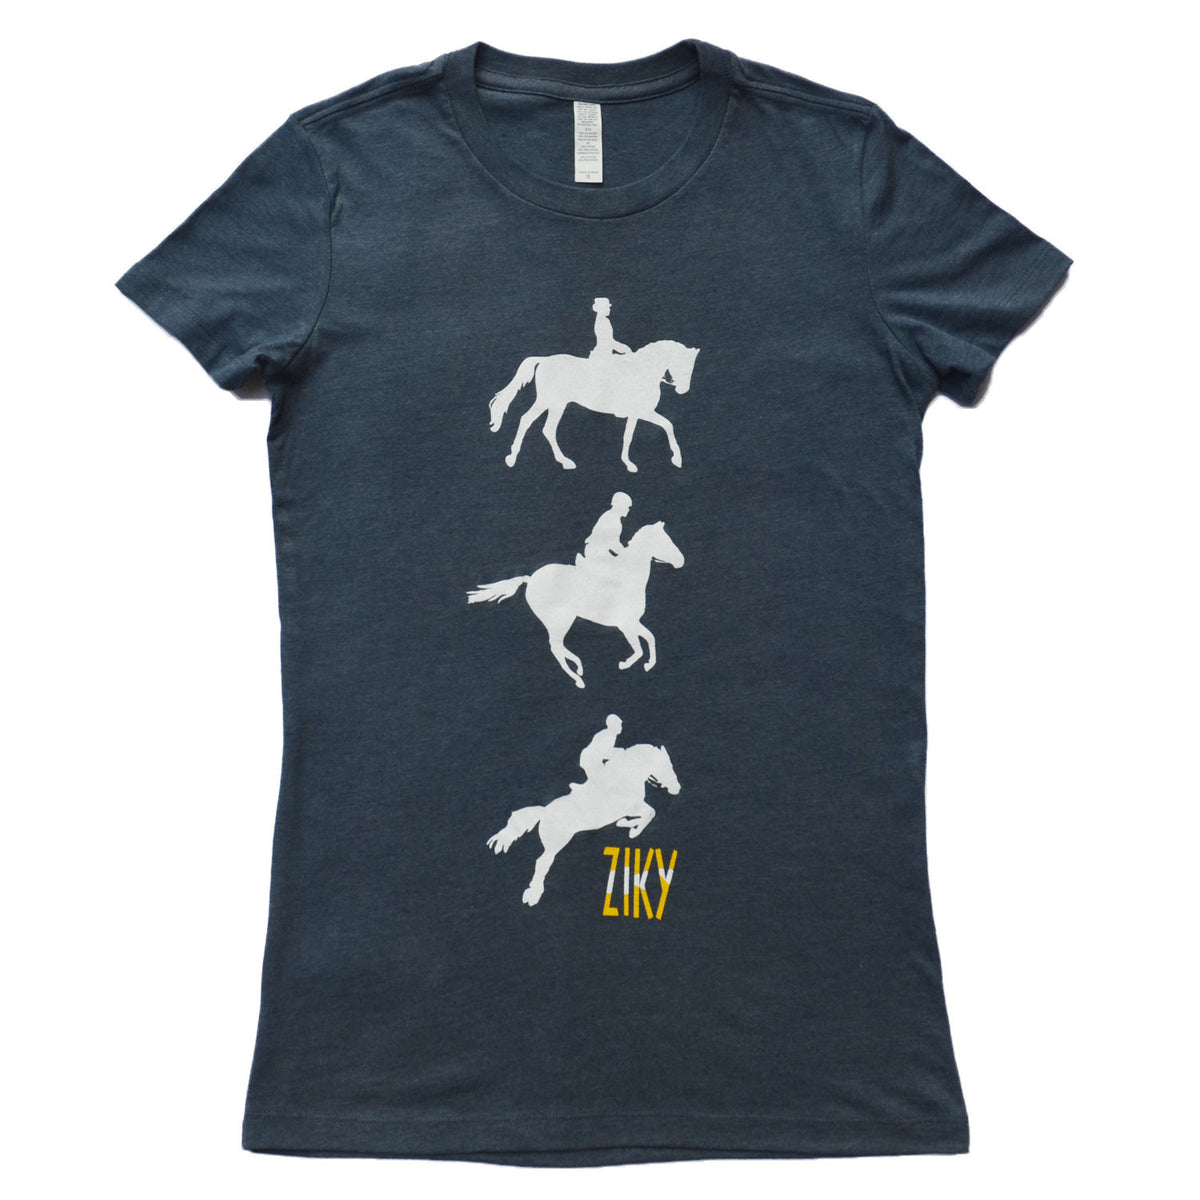 Indigo blue eventing horse shirt